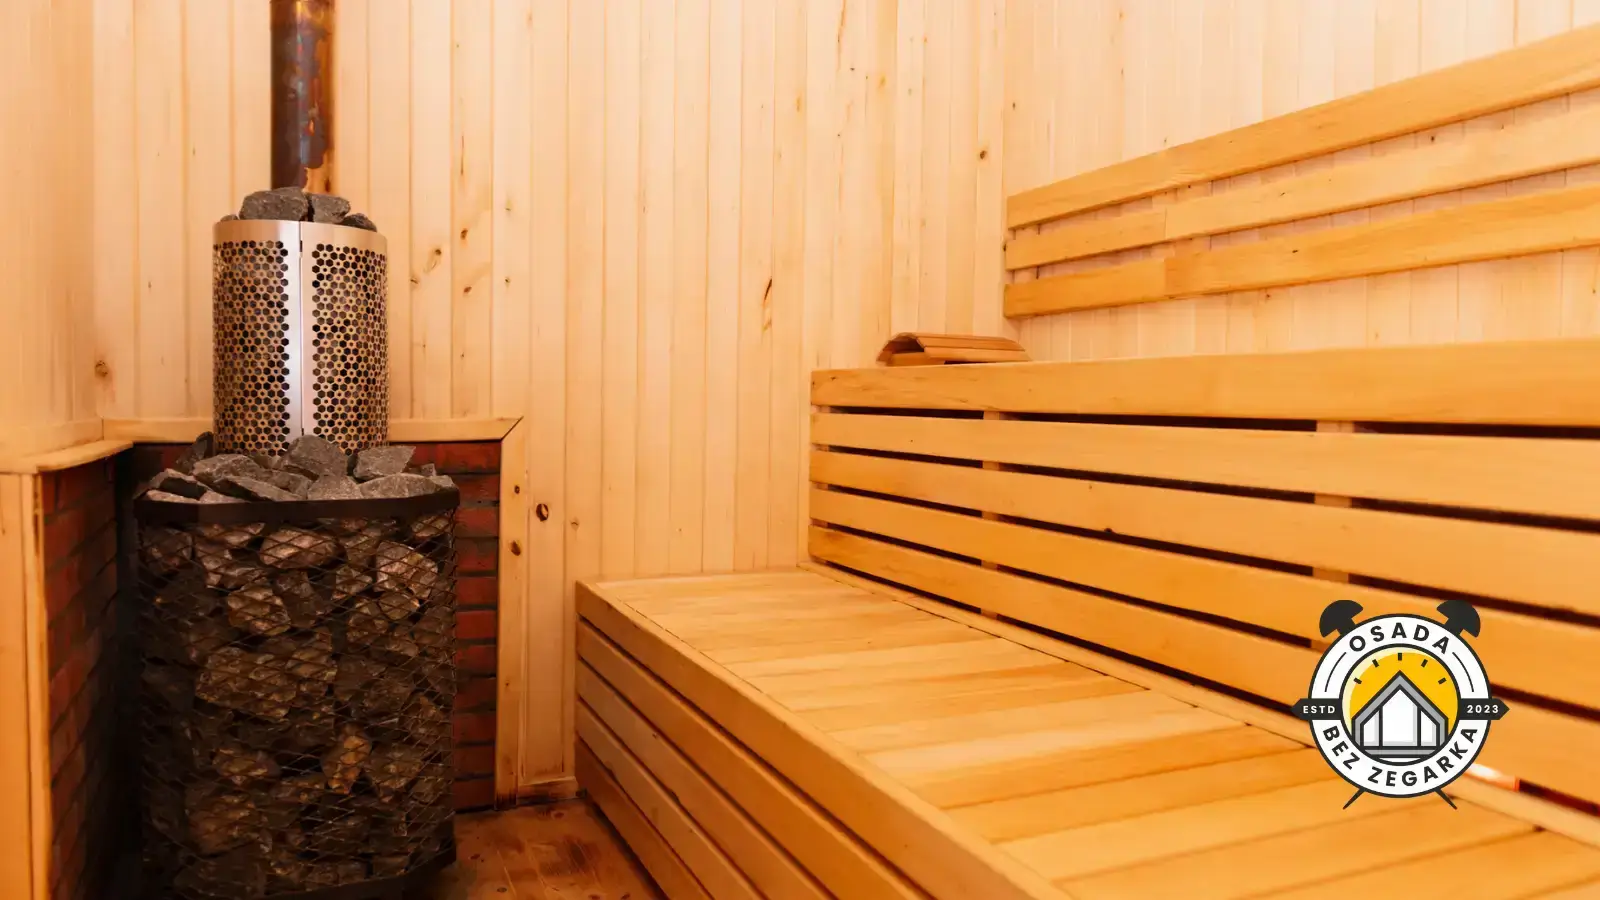 sauna osada bez zegarka suwalszczyzna